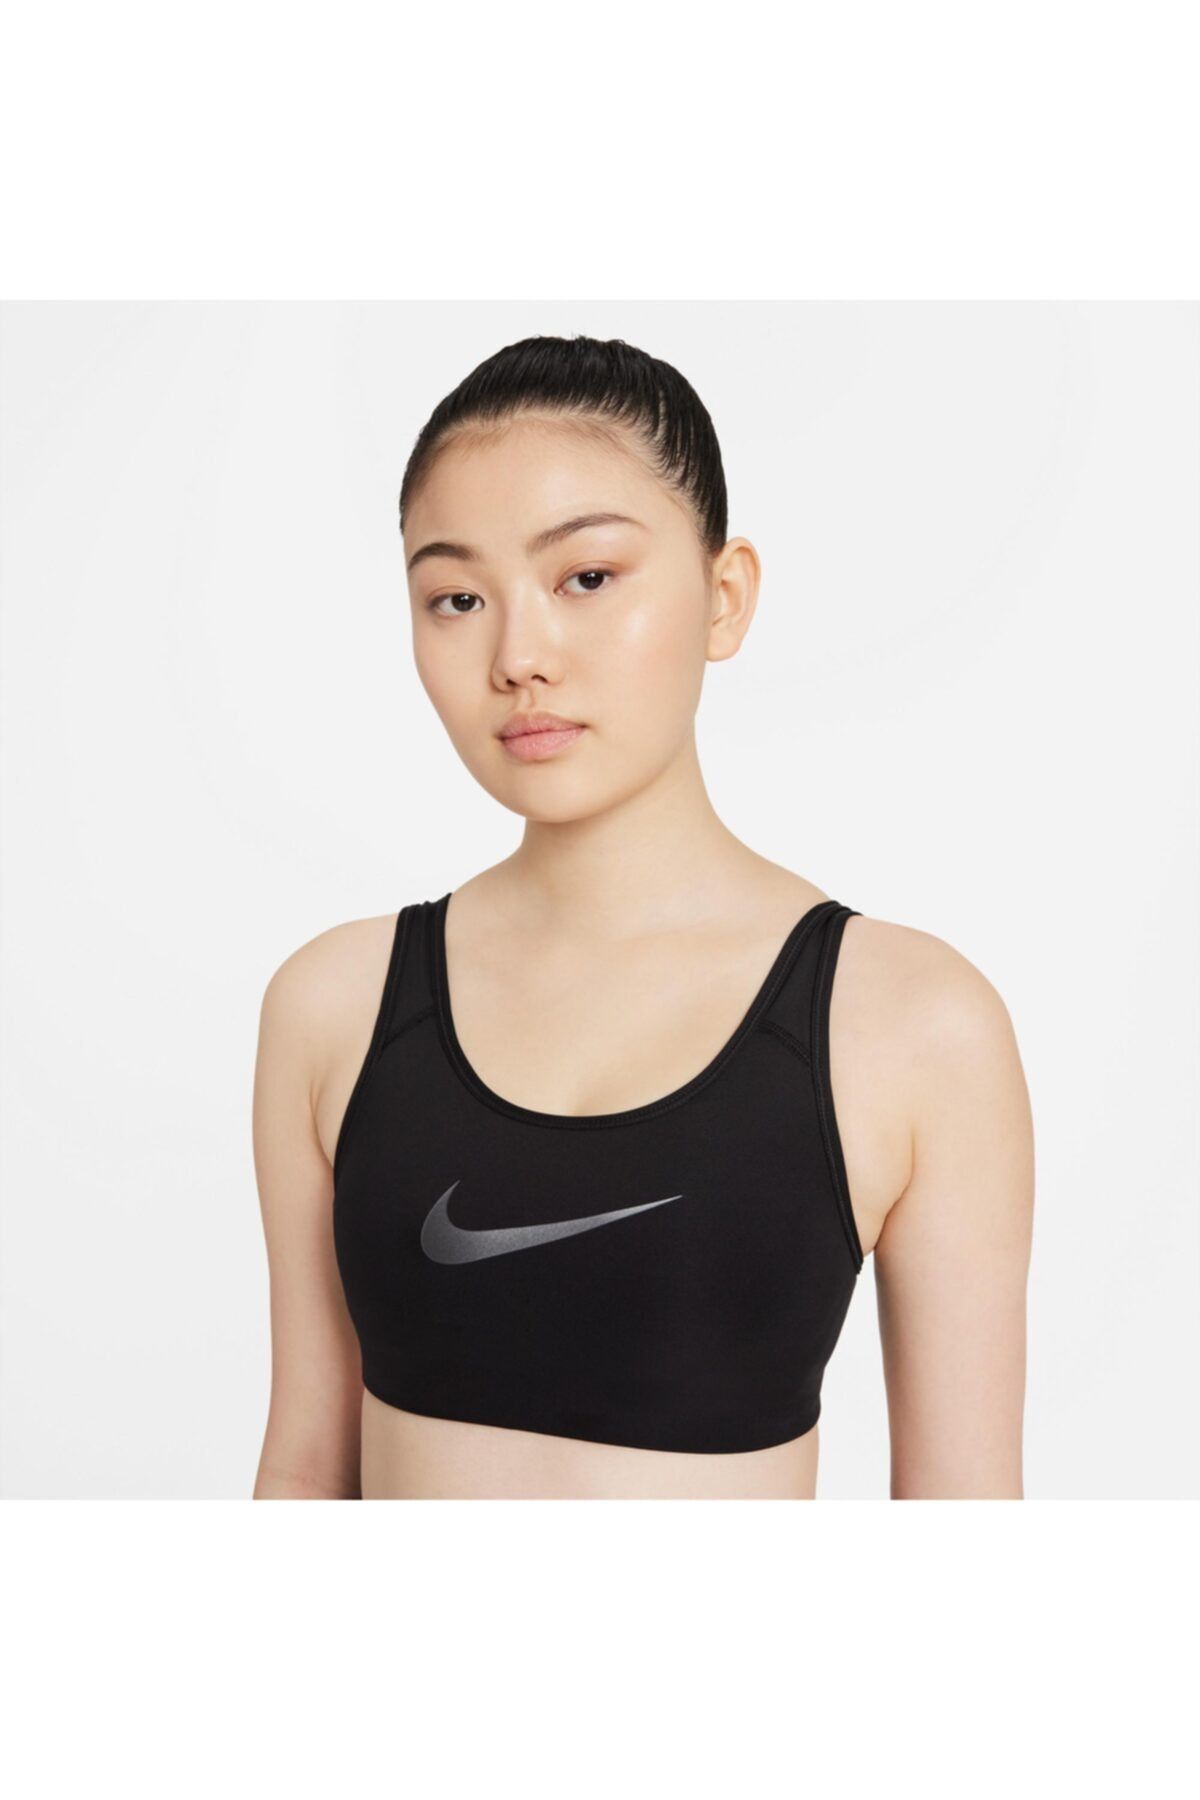 Nike Dc5543 010 Kadın Siyah Büstiyer